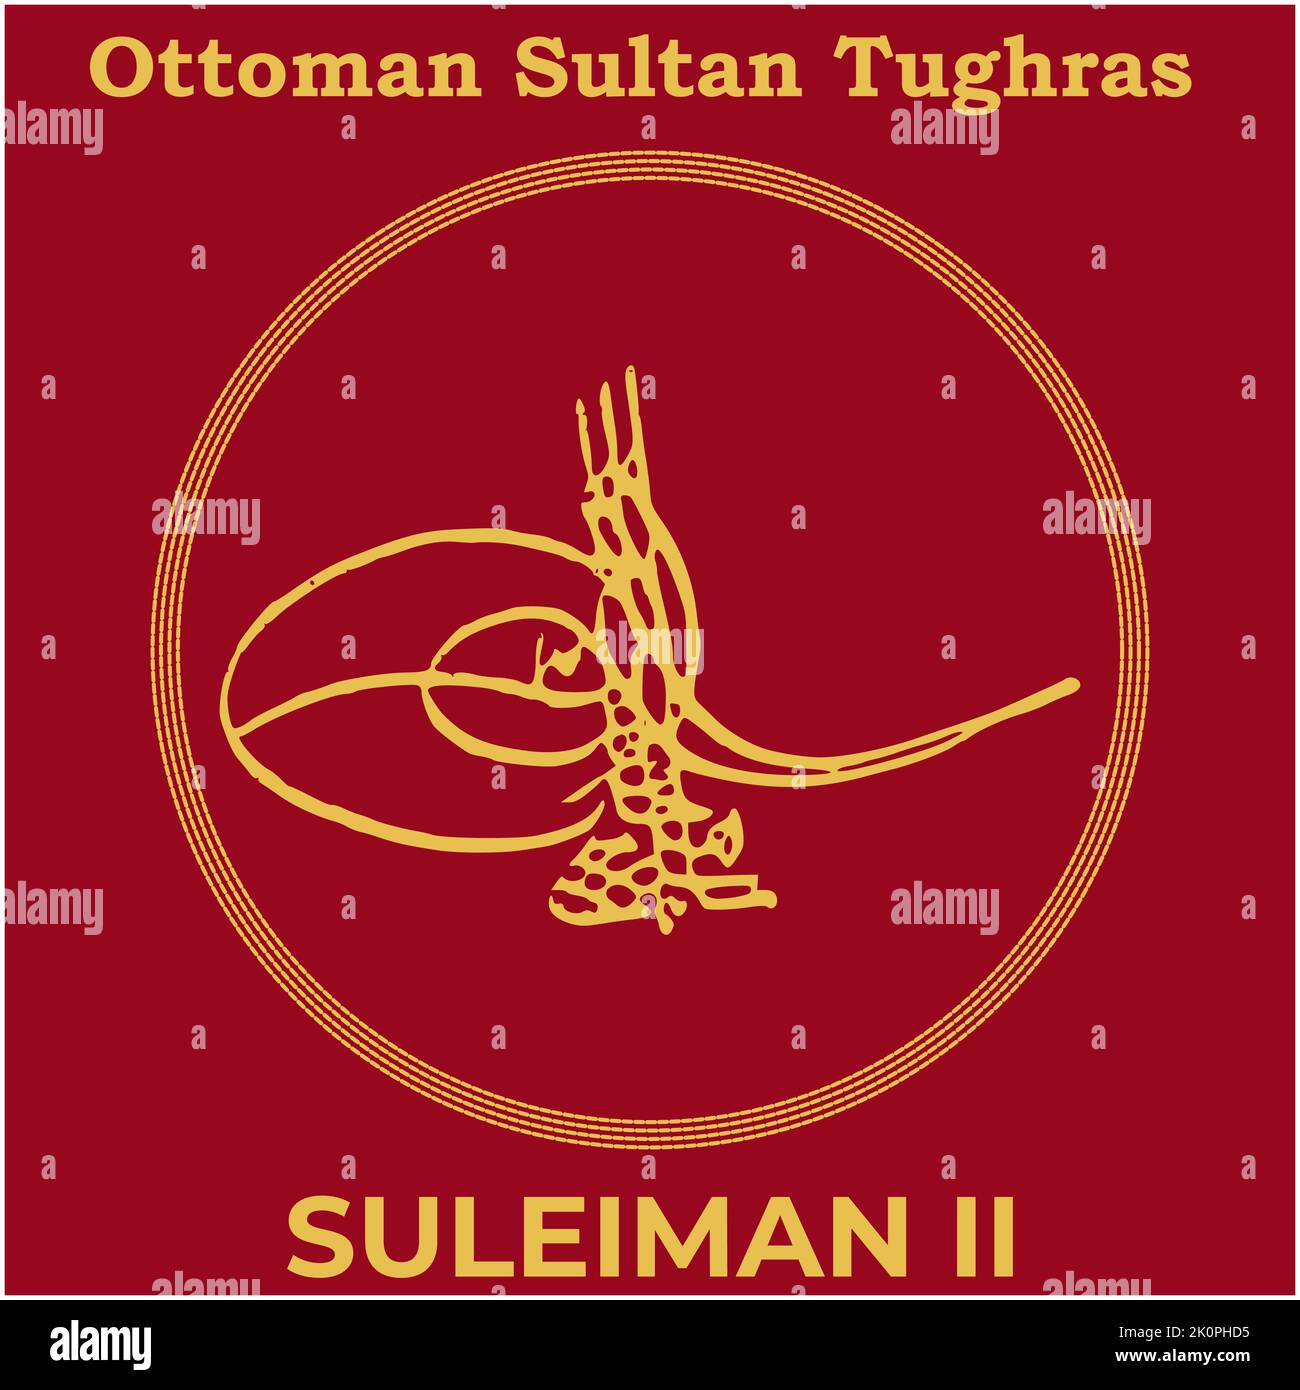 Immagine vettoriale con la firma di Tughra del ventesimo sultano ottomano sulfurano II, Tughra del sulfurano II con il tradizionale sfondo di pittura turca. Illustrazione Vettoriale